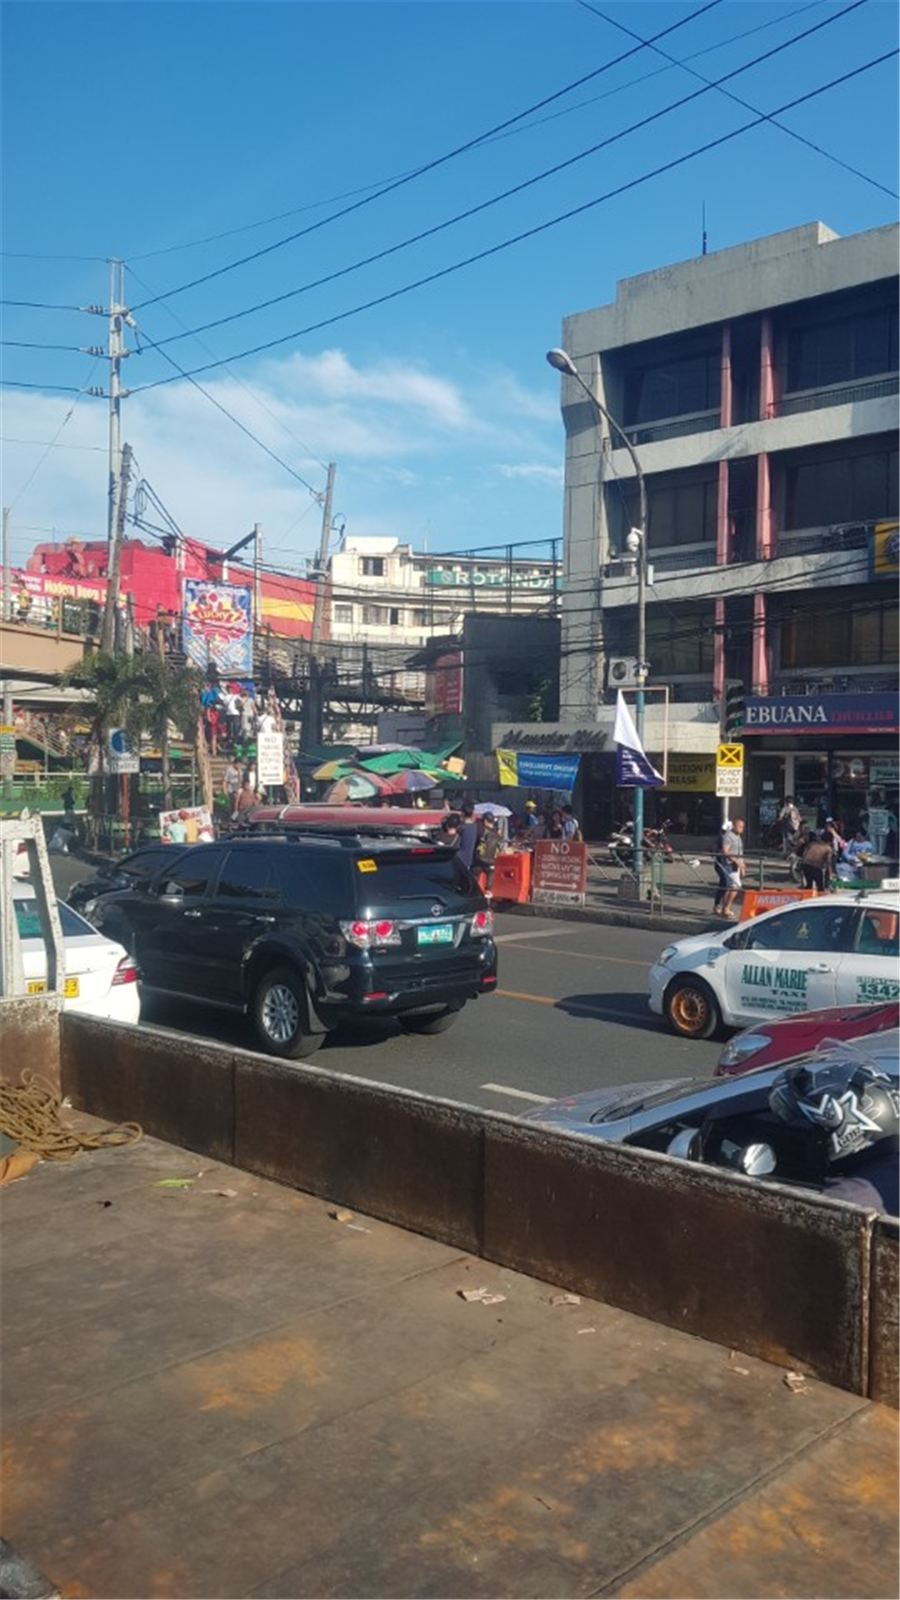 검은색 차량 너머 필리핀의 대중교통수단인 지프니에 사람들이 매달려 있는 모습. 